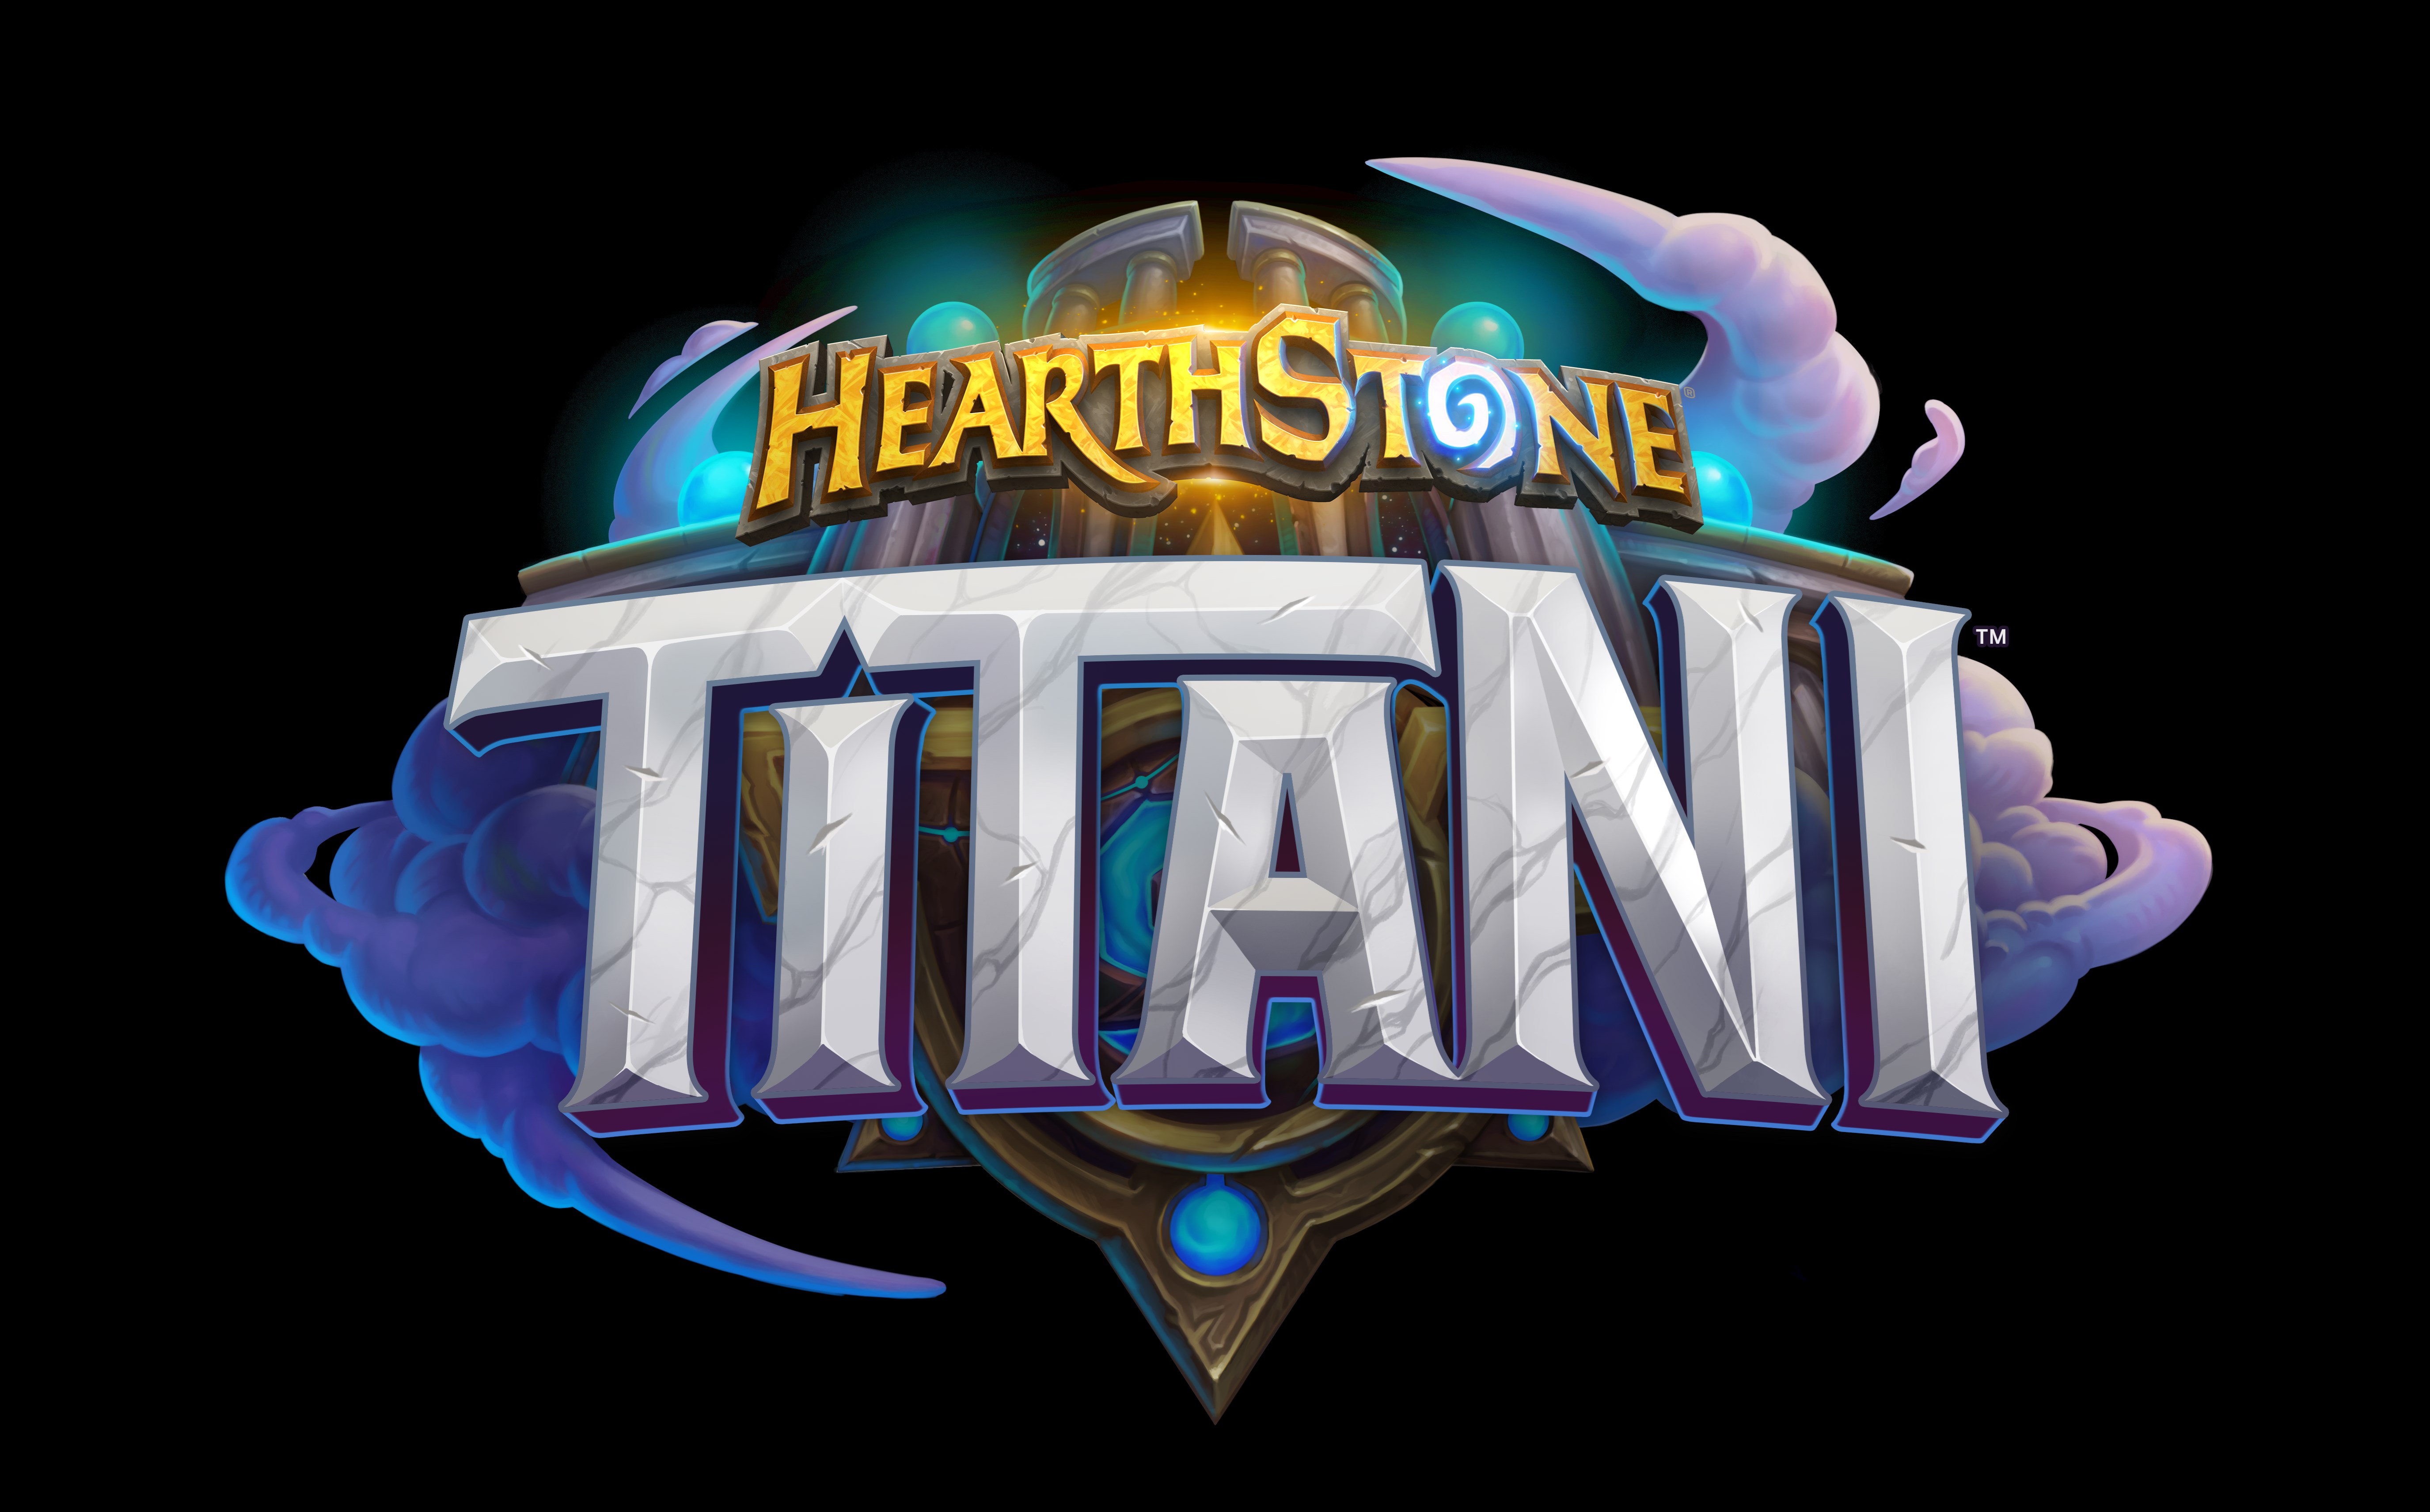 Hearthstone si prepara a fare il botto con TITANI, l'ultima espansione in arrivo ad agosto!